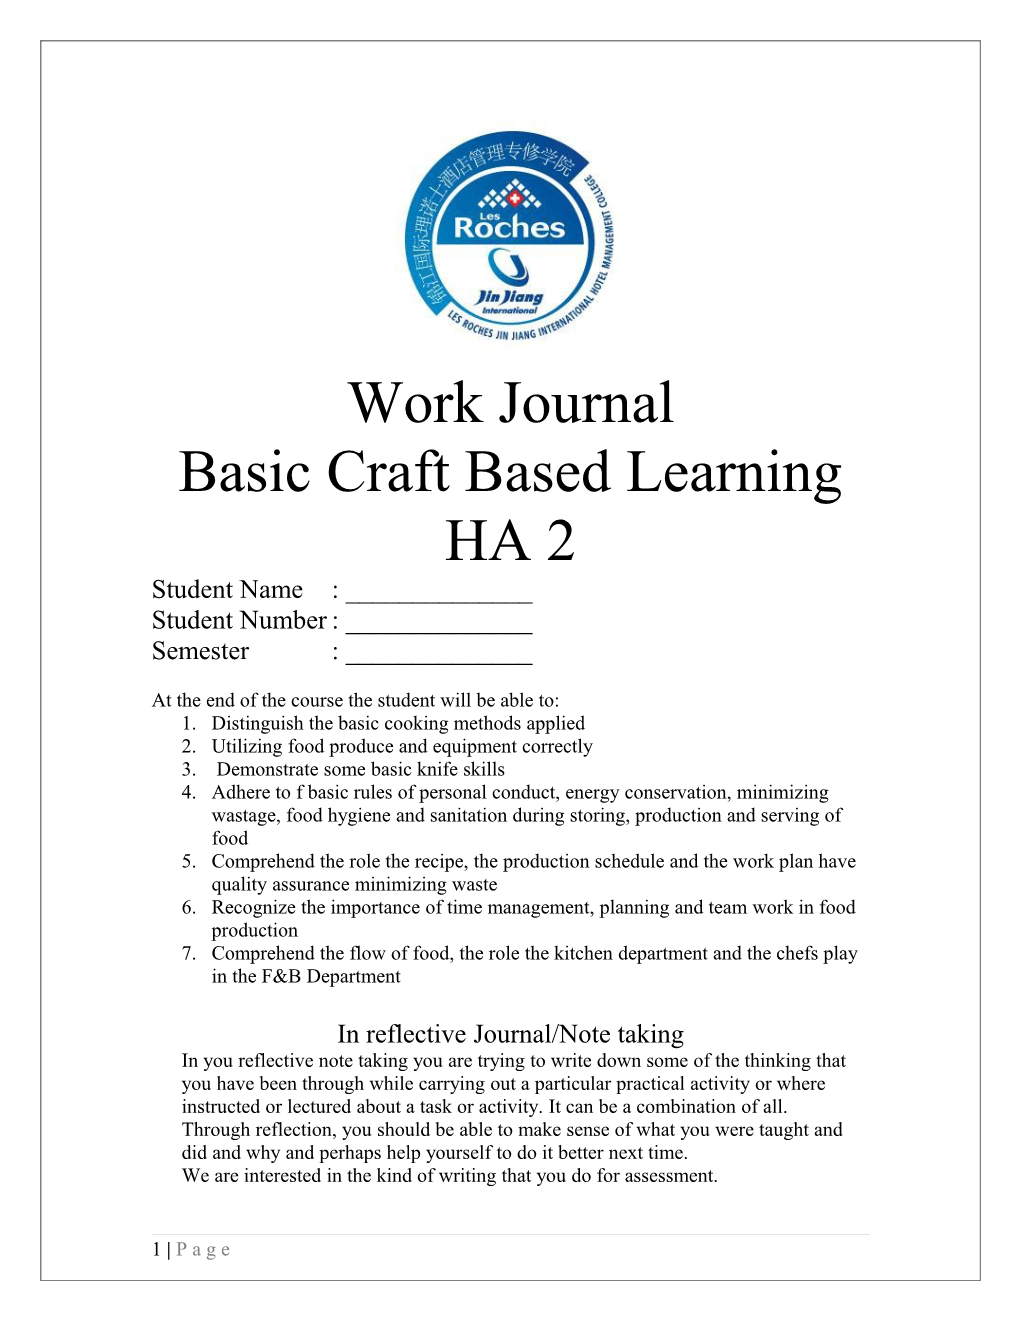 Basic Craft Based Learning HA 2